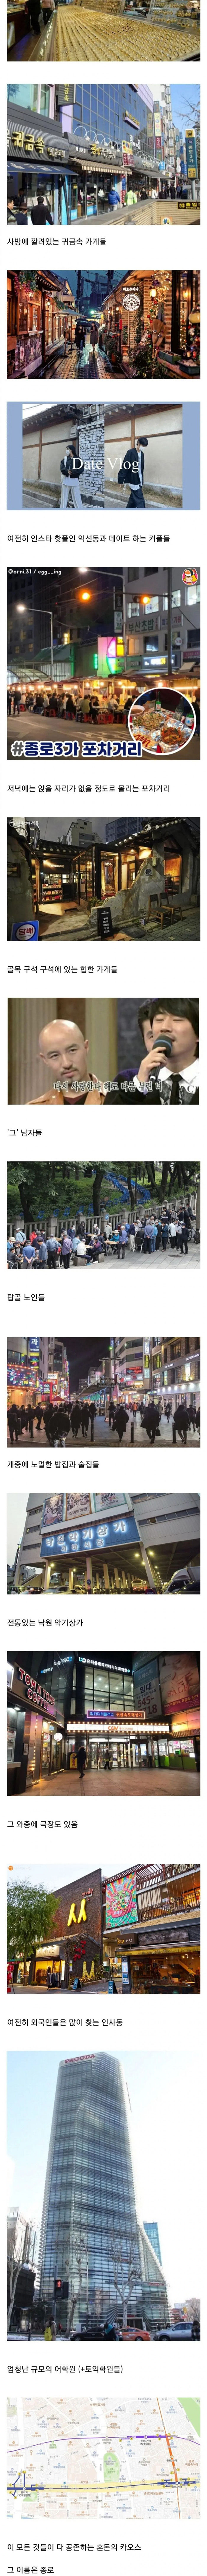 한국에서 가장 혼돈스러운 동네.jpg